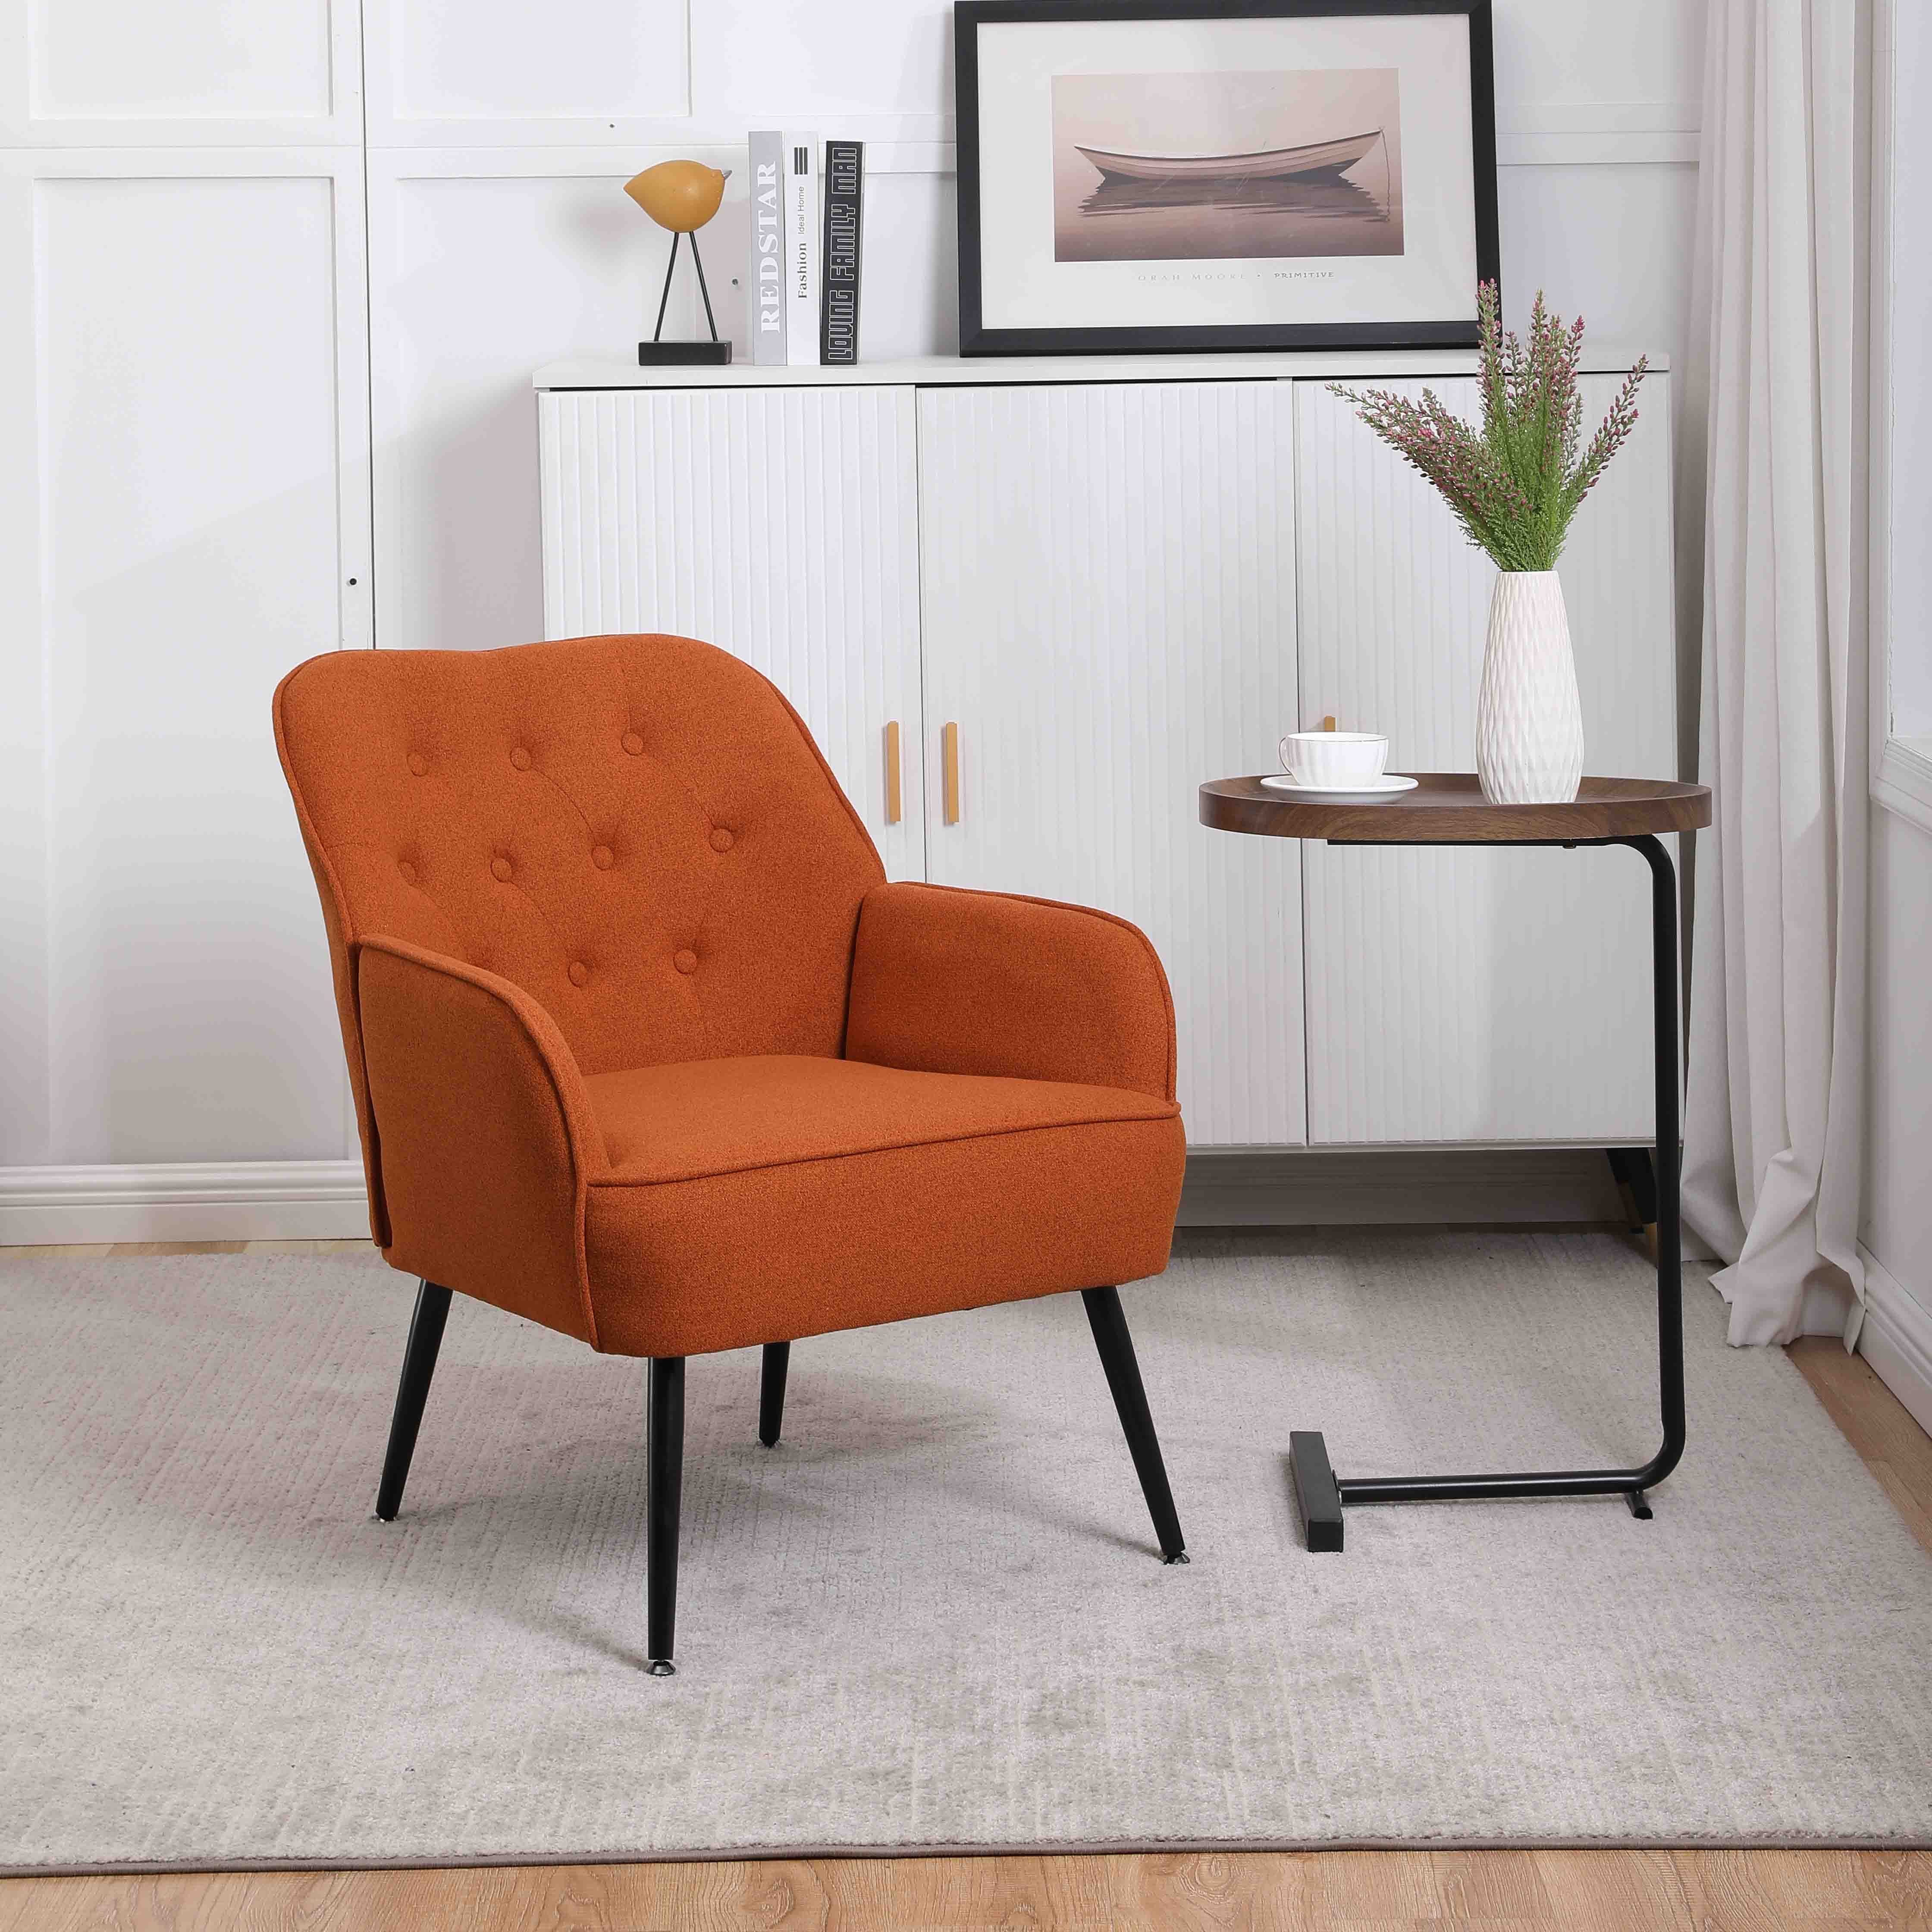 OKWISH Loungesessel Einzelsessel, Polstersessel, Loungesessel, Fernsehsessel (Büro Freizeit Gepolsterte Einzelsofa Stuhl), Kaffee Stuhl mit Metallbeinen orange